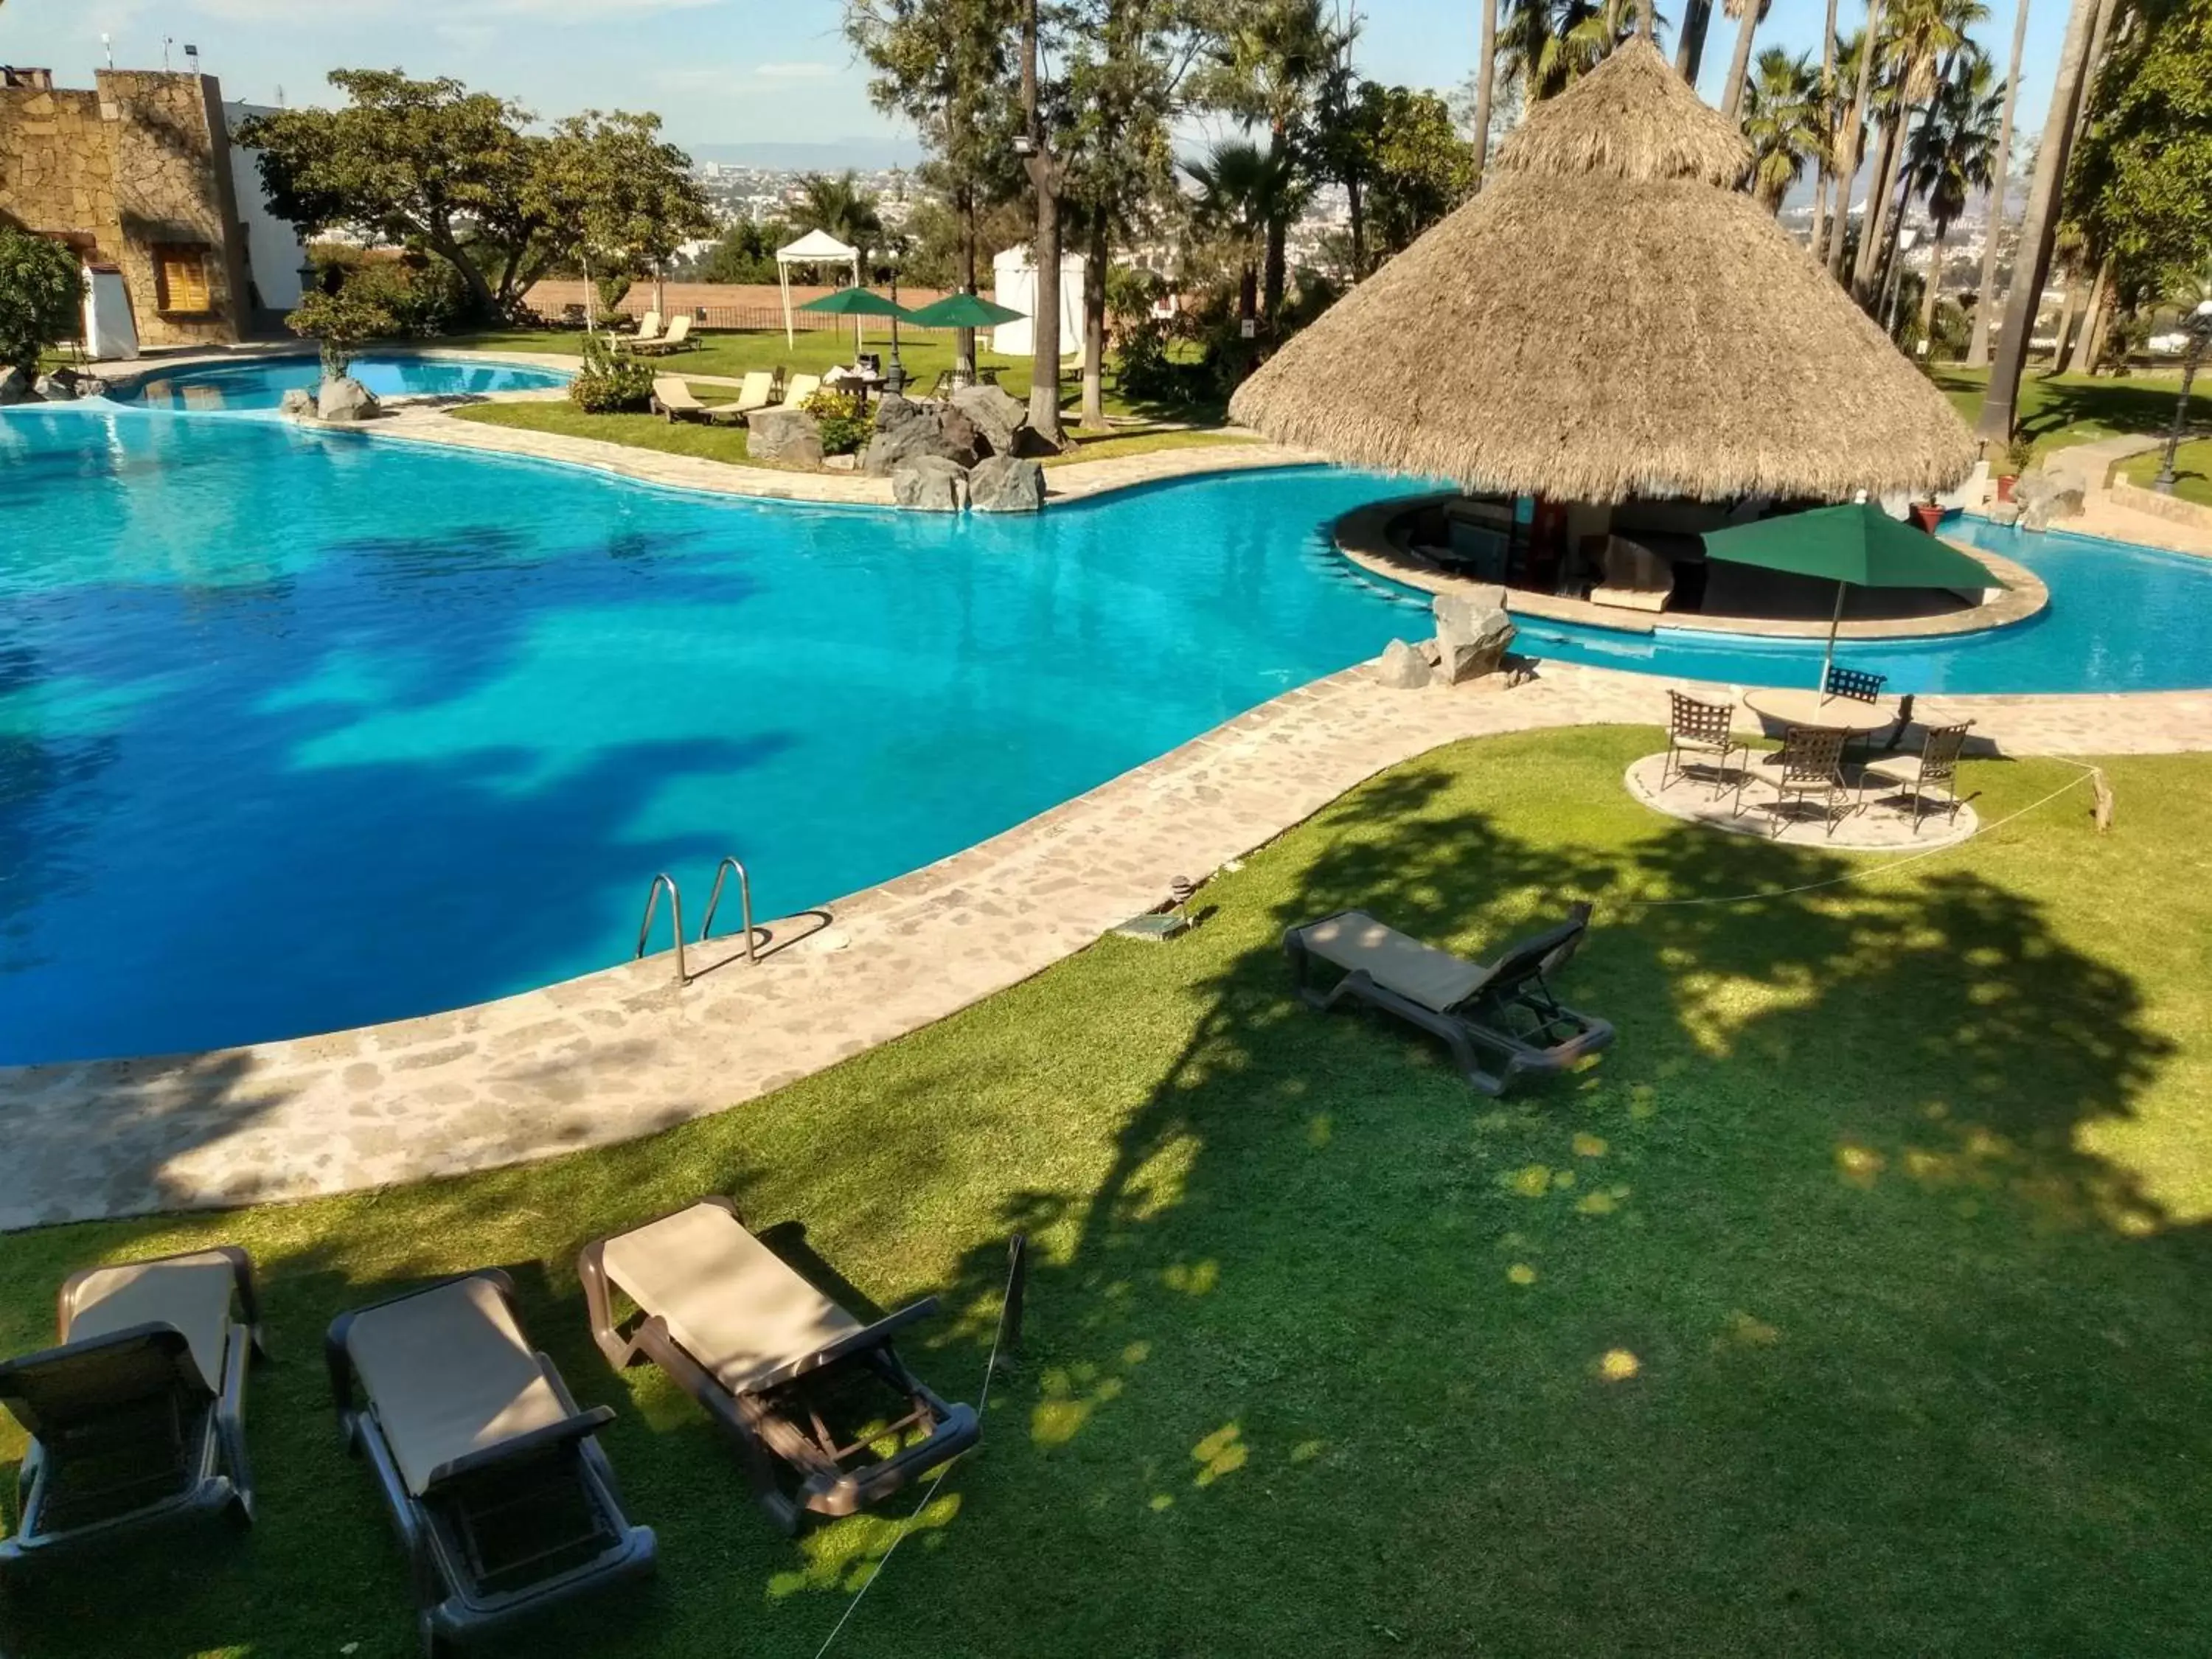 Swimming pool, Pool View in Radisson Hotel Tapatio Guadalajara